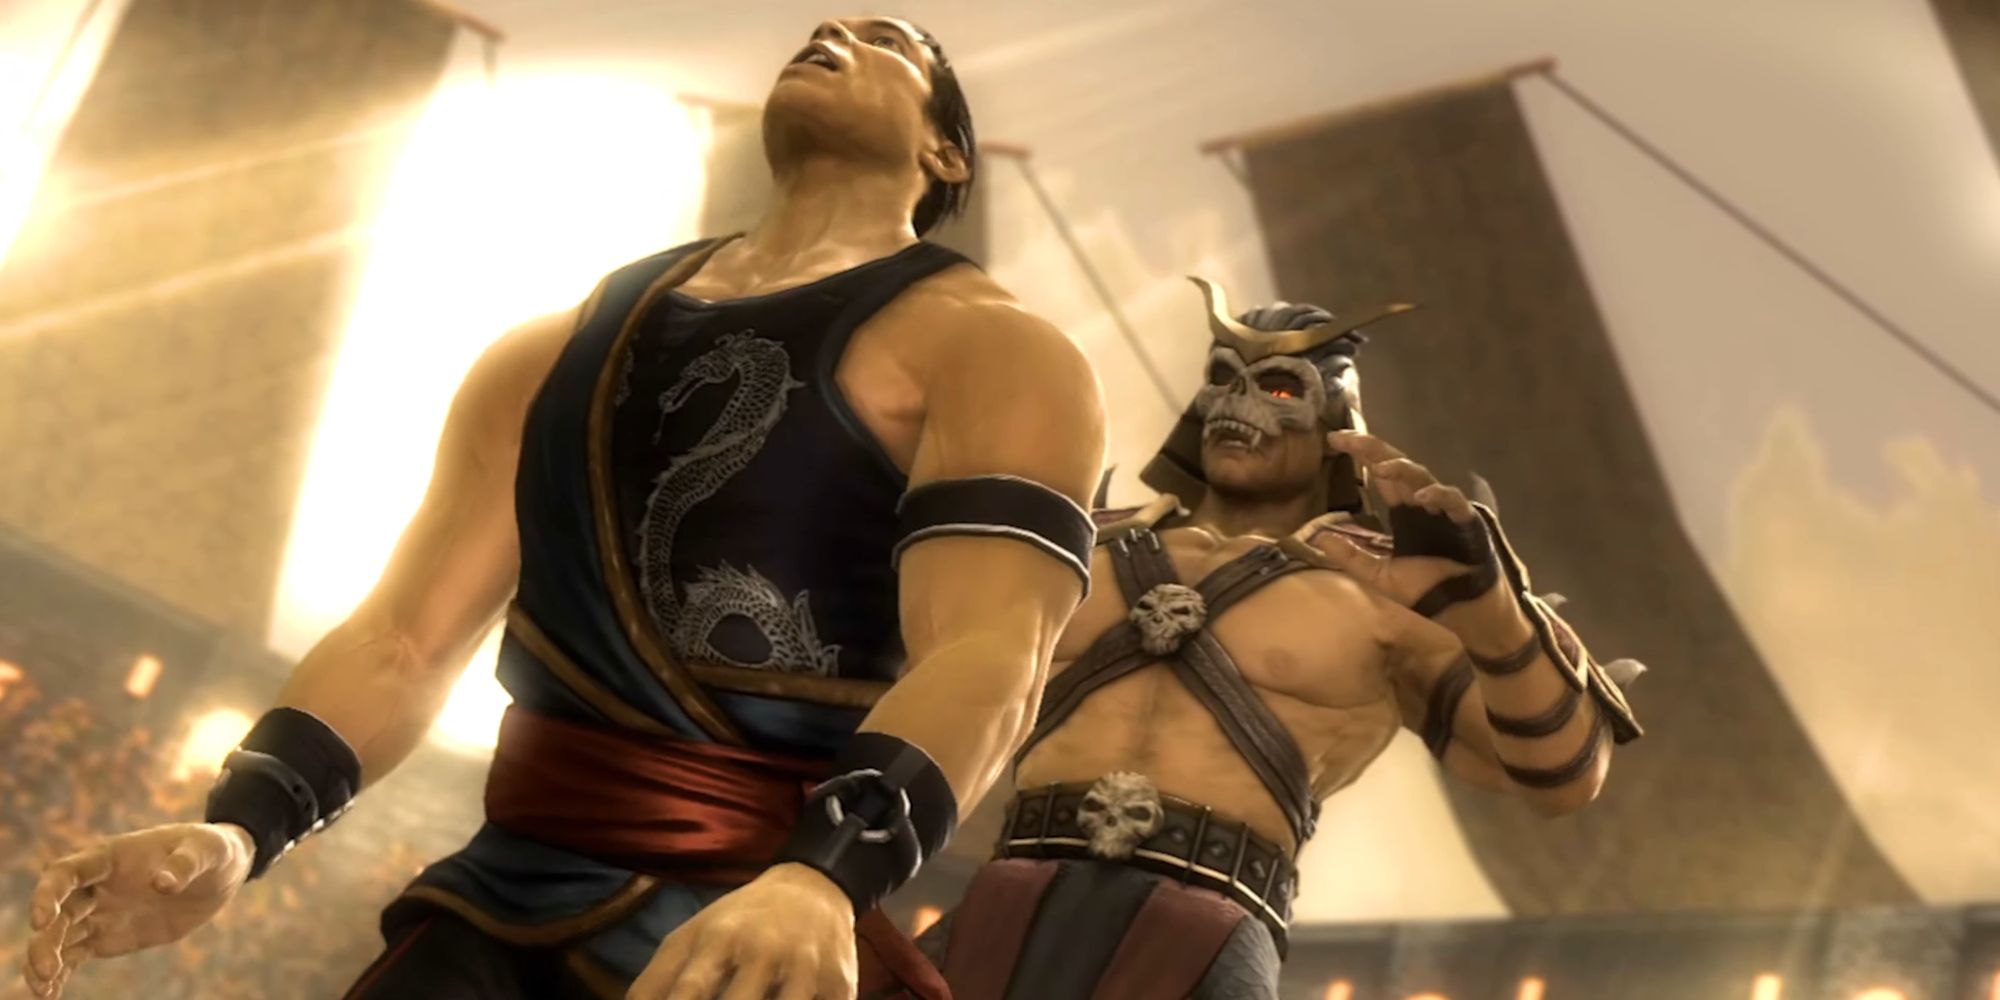 Shao Kahn murdering Kung Lao in Mortal Kombat 9 2011